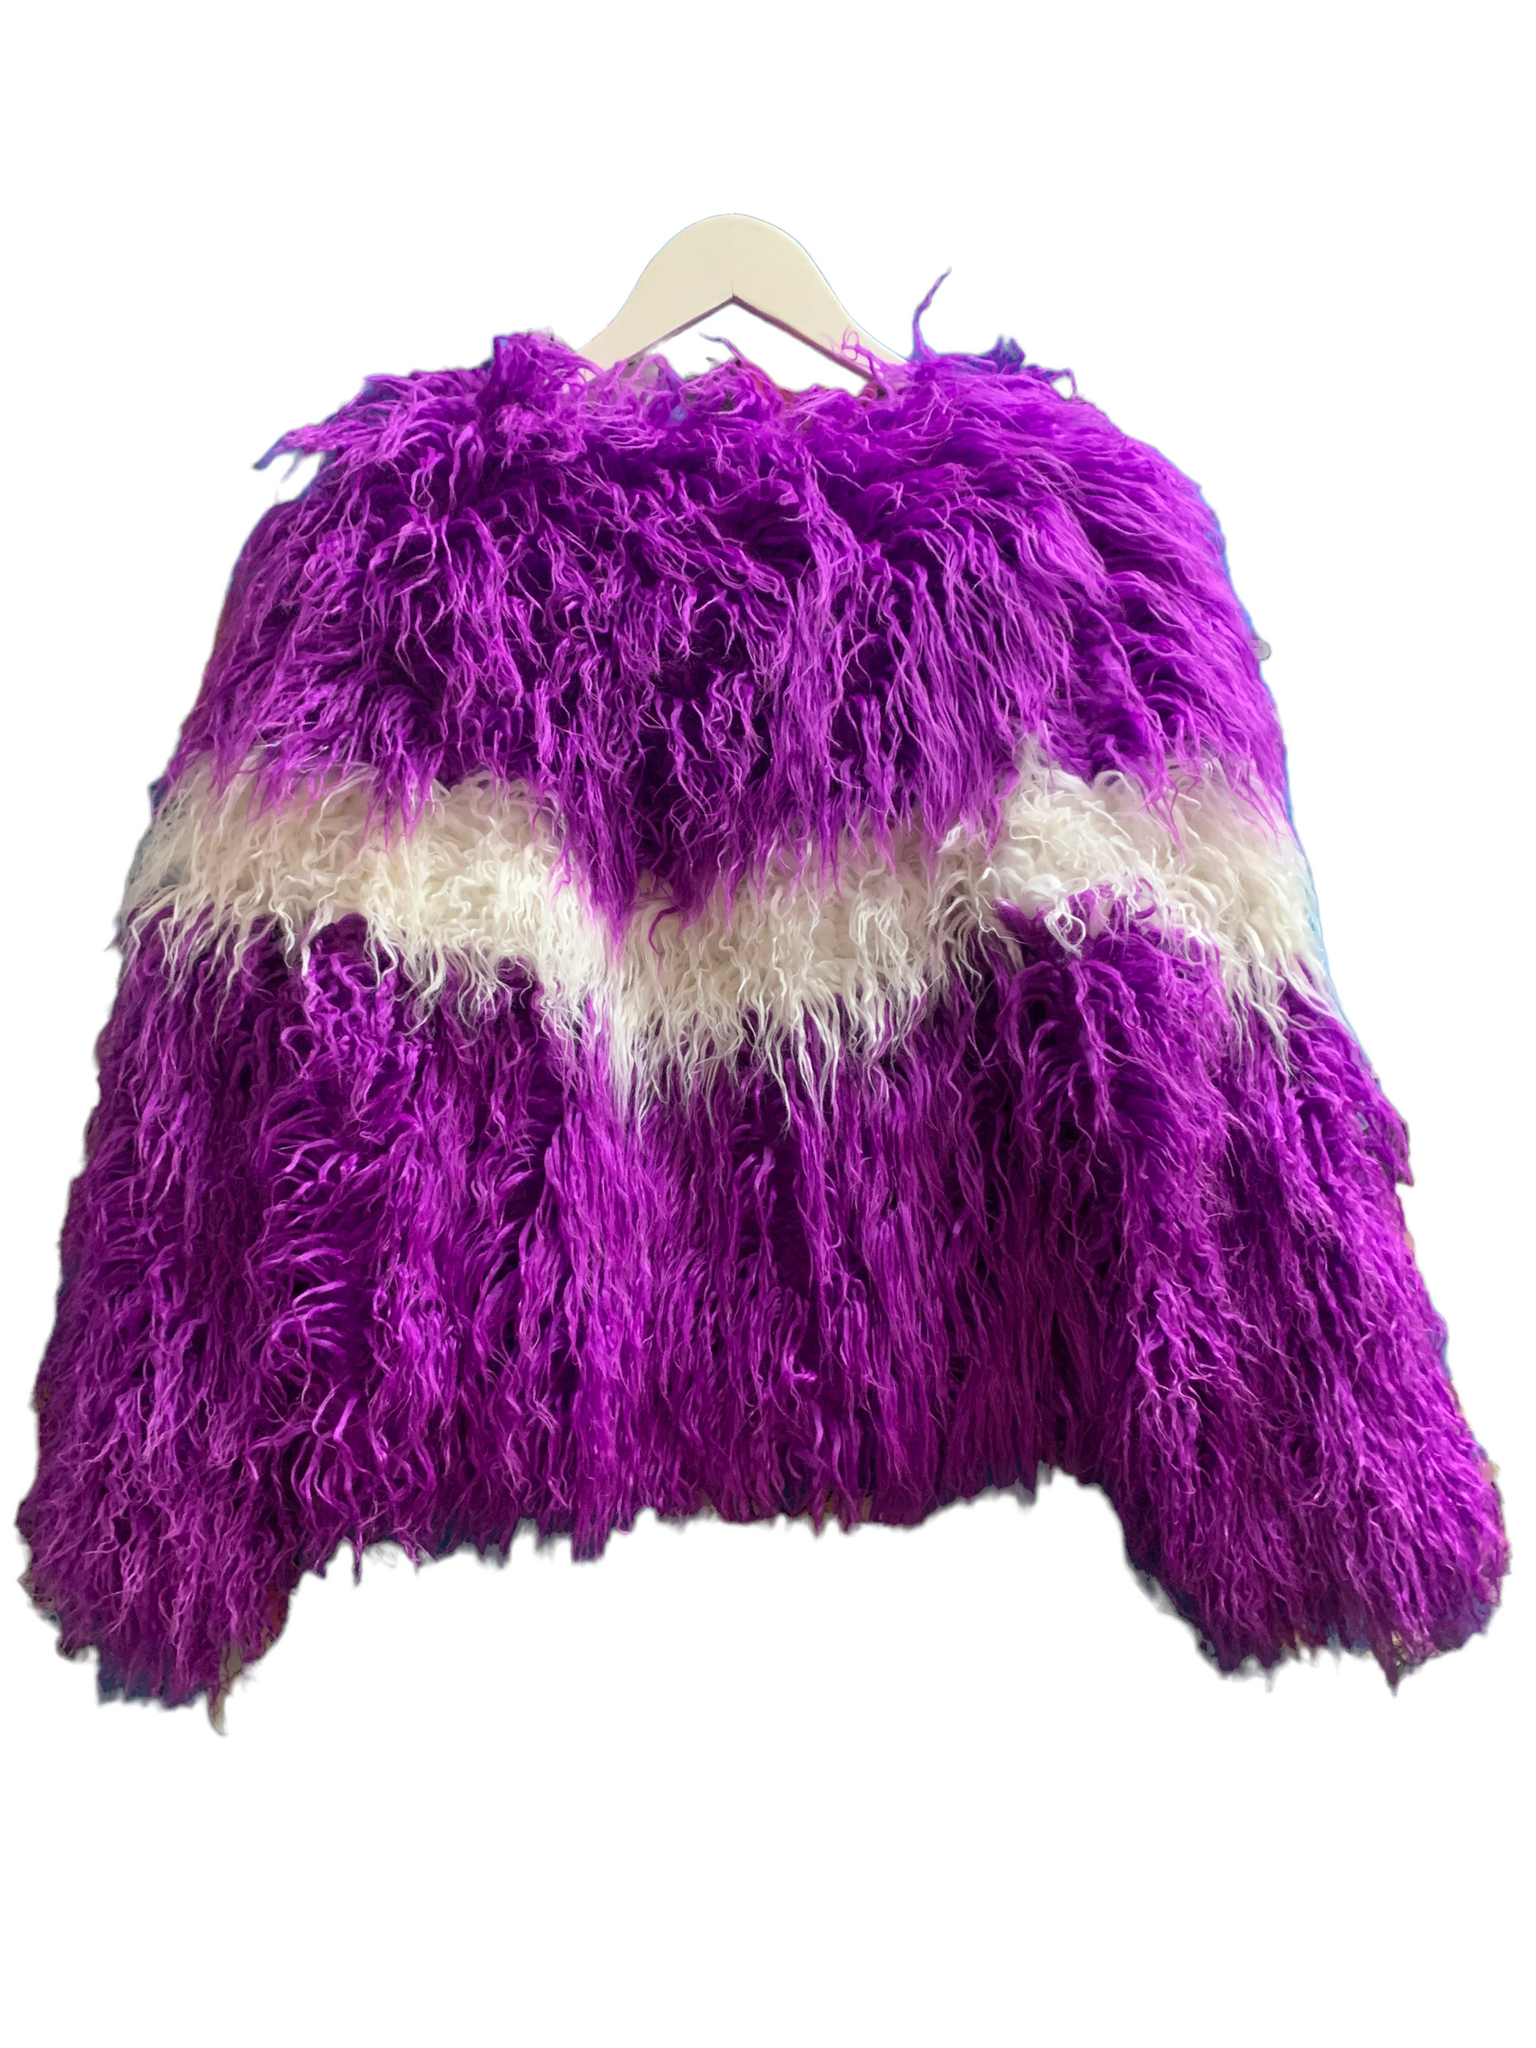 Ultra Fest Faux Fur Purple Jacket